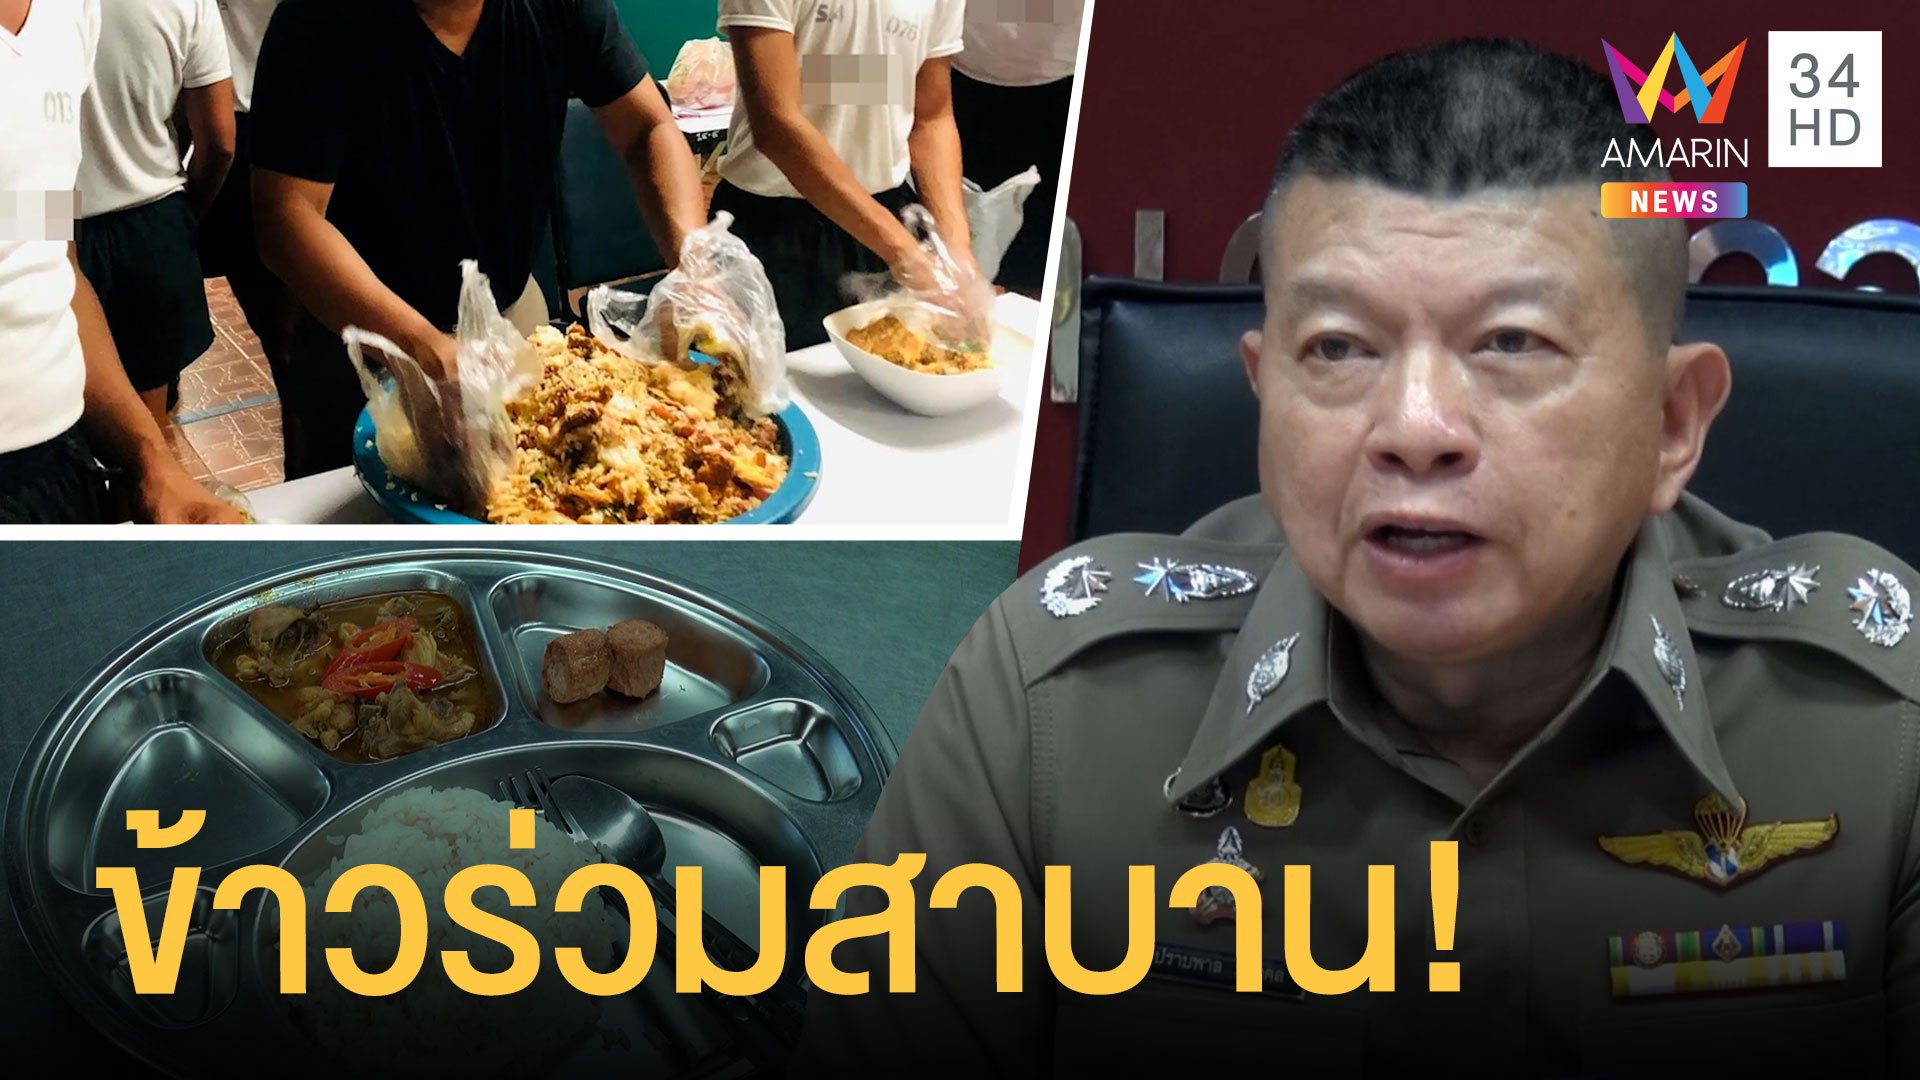 นักเรียนนายสิบตำรวจกินข้าวเย็นแบบกะละมัง รองผู้การบอกเขาแค่เล่นสนุก | ข่าวอรุณอมรินทร์ | 27 ต.ค. 63 | AMARIN TVHD34